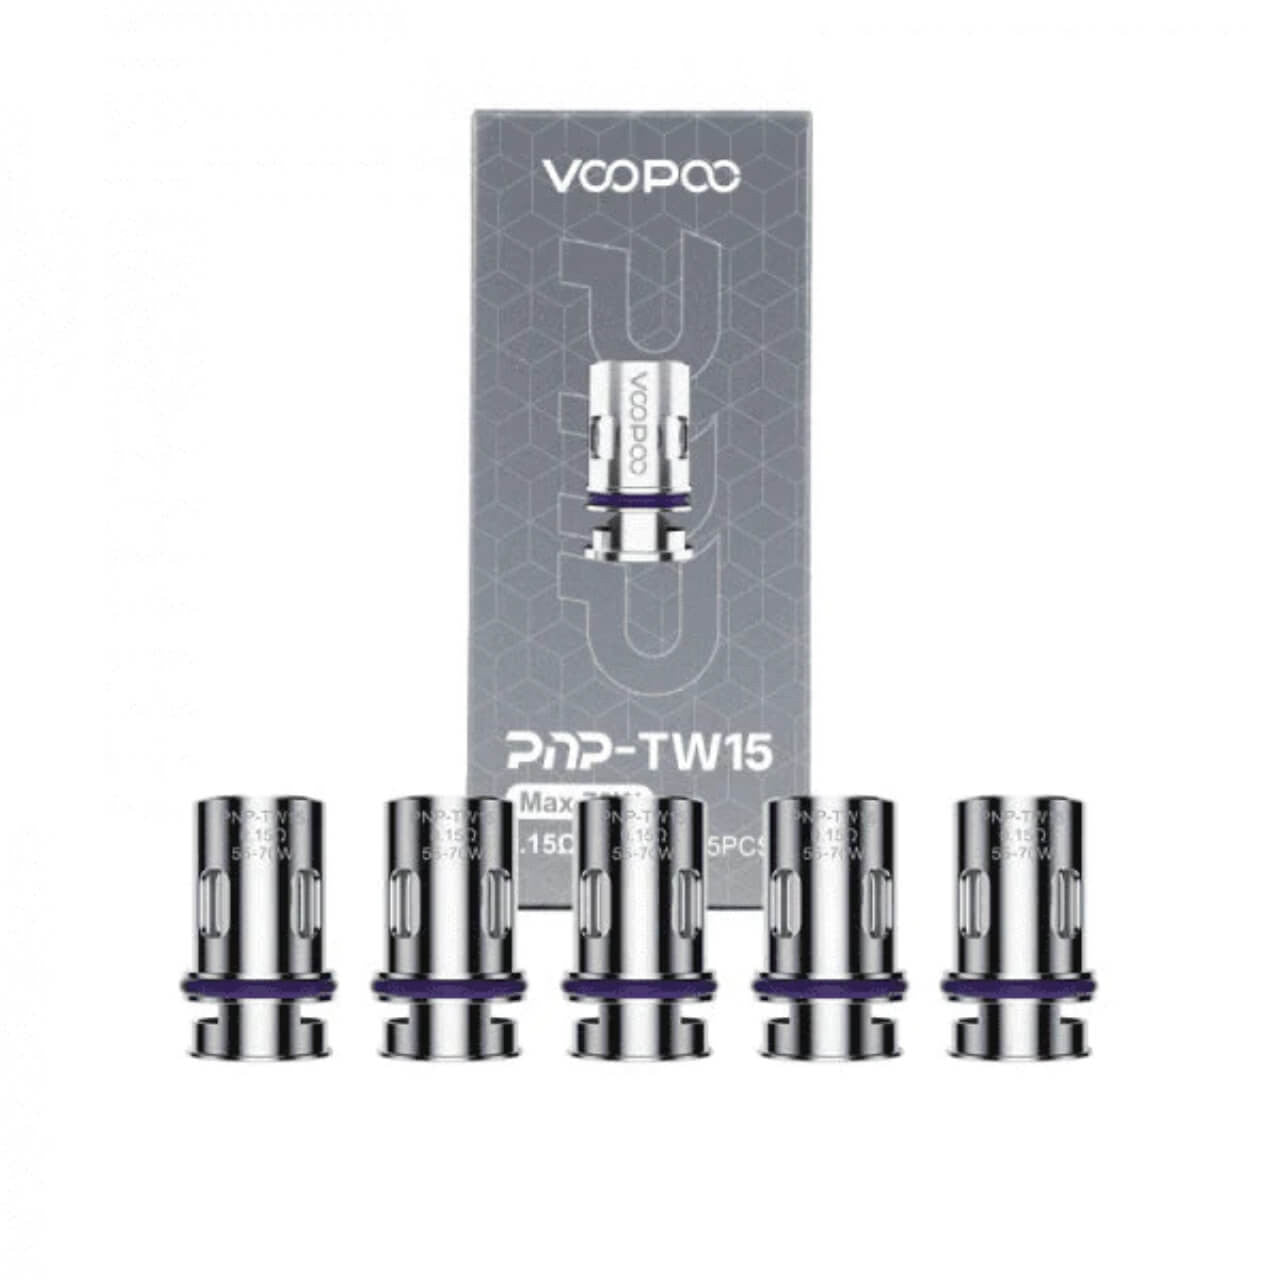 Voopoo - PNP TW15 0.15Ω 70W - Coils (Box of 5) - MK Distro